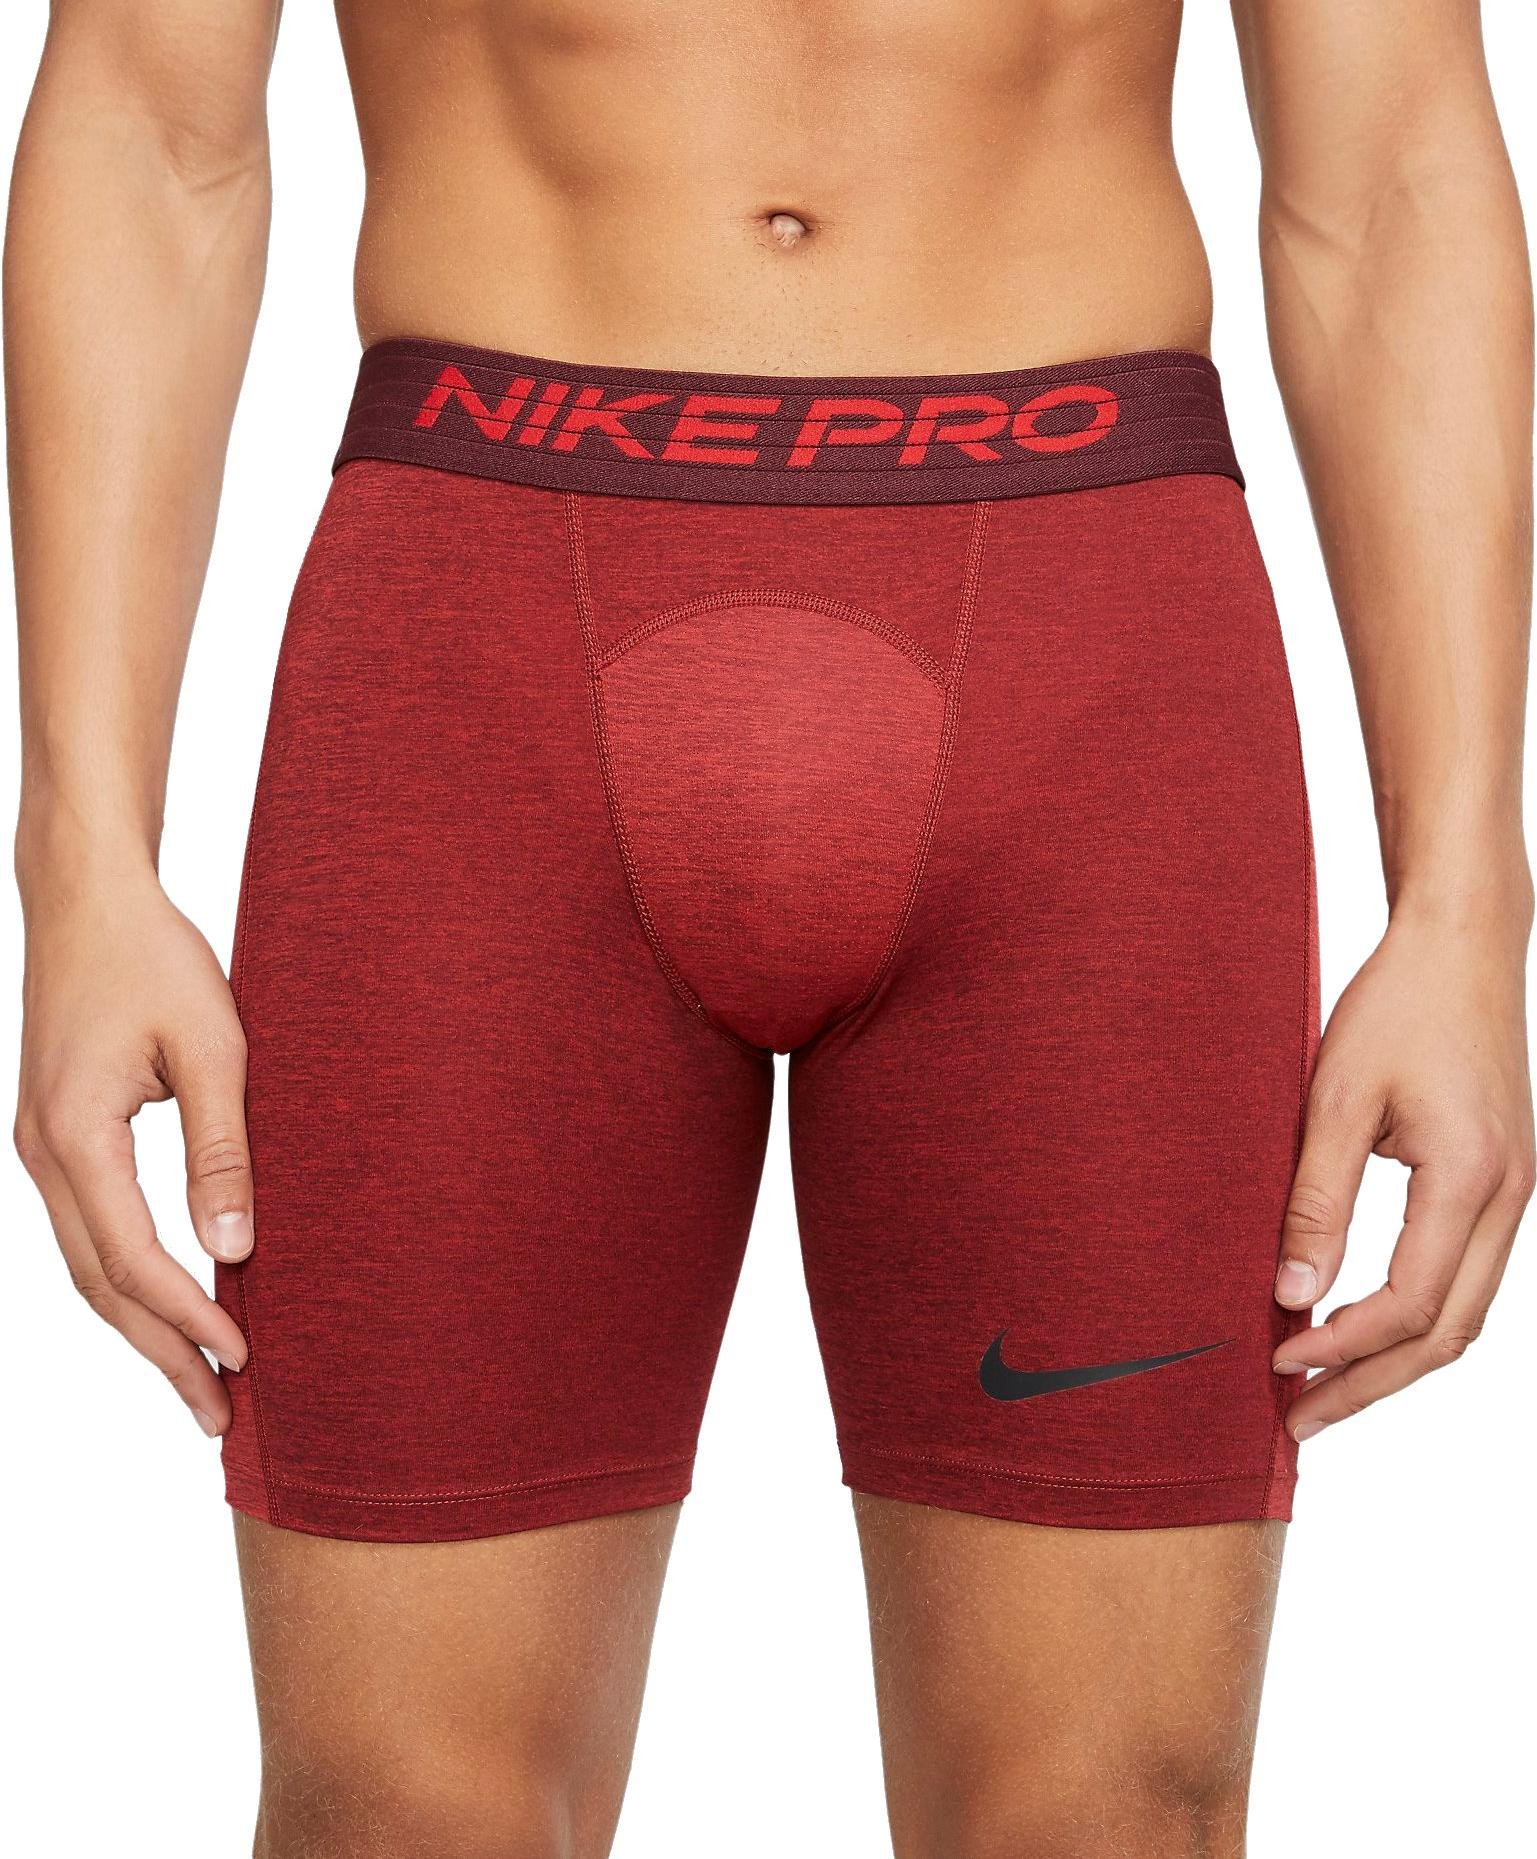 Pánské tréninkové šortky Nike Pro